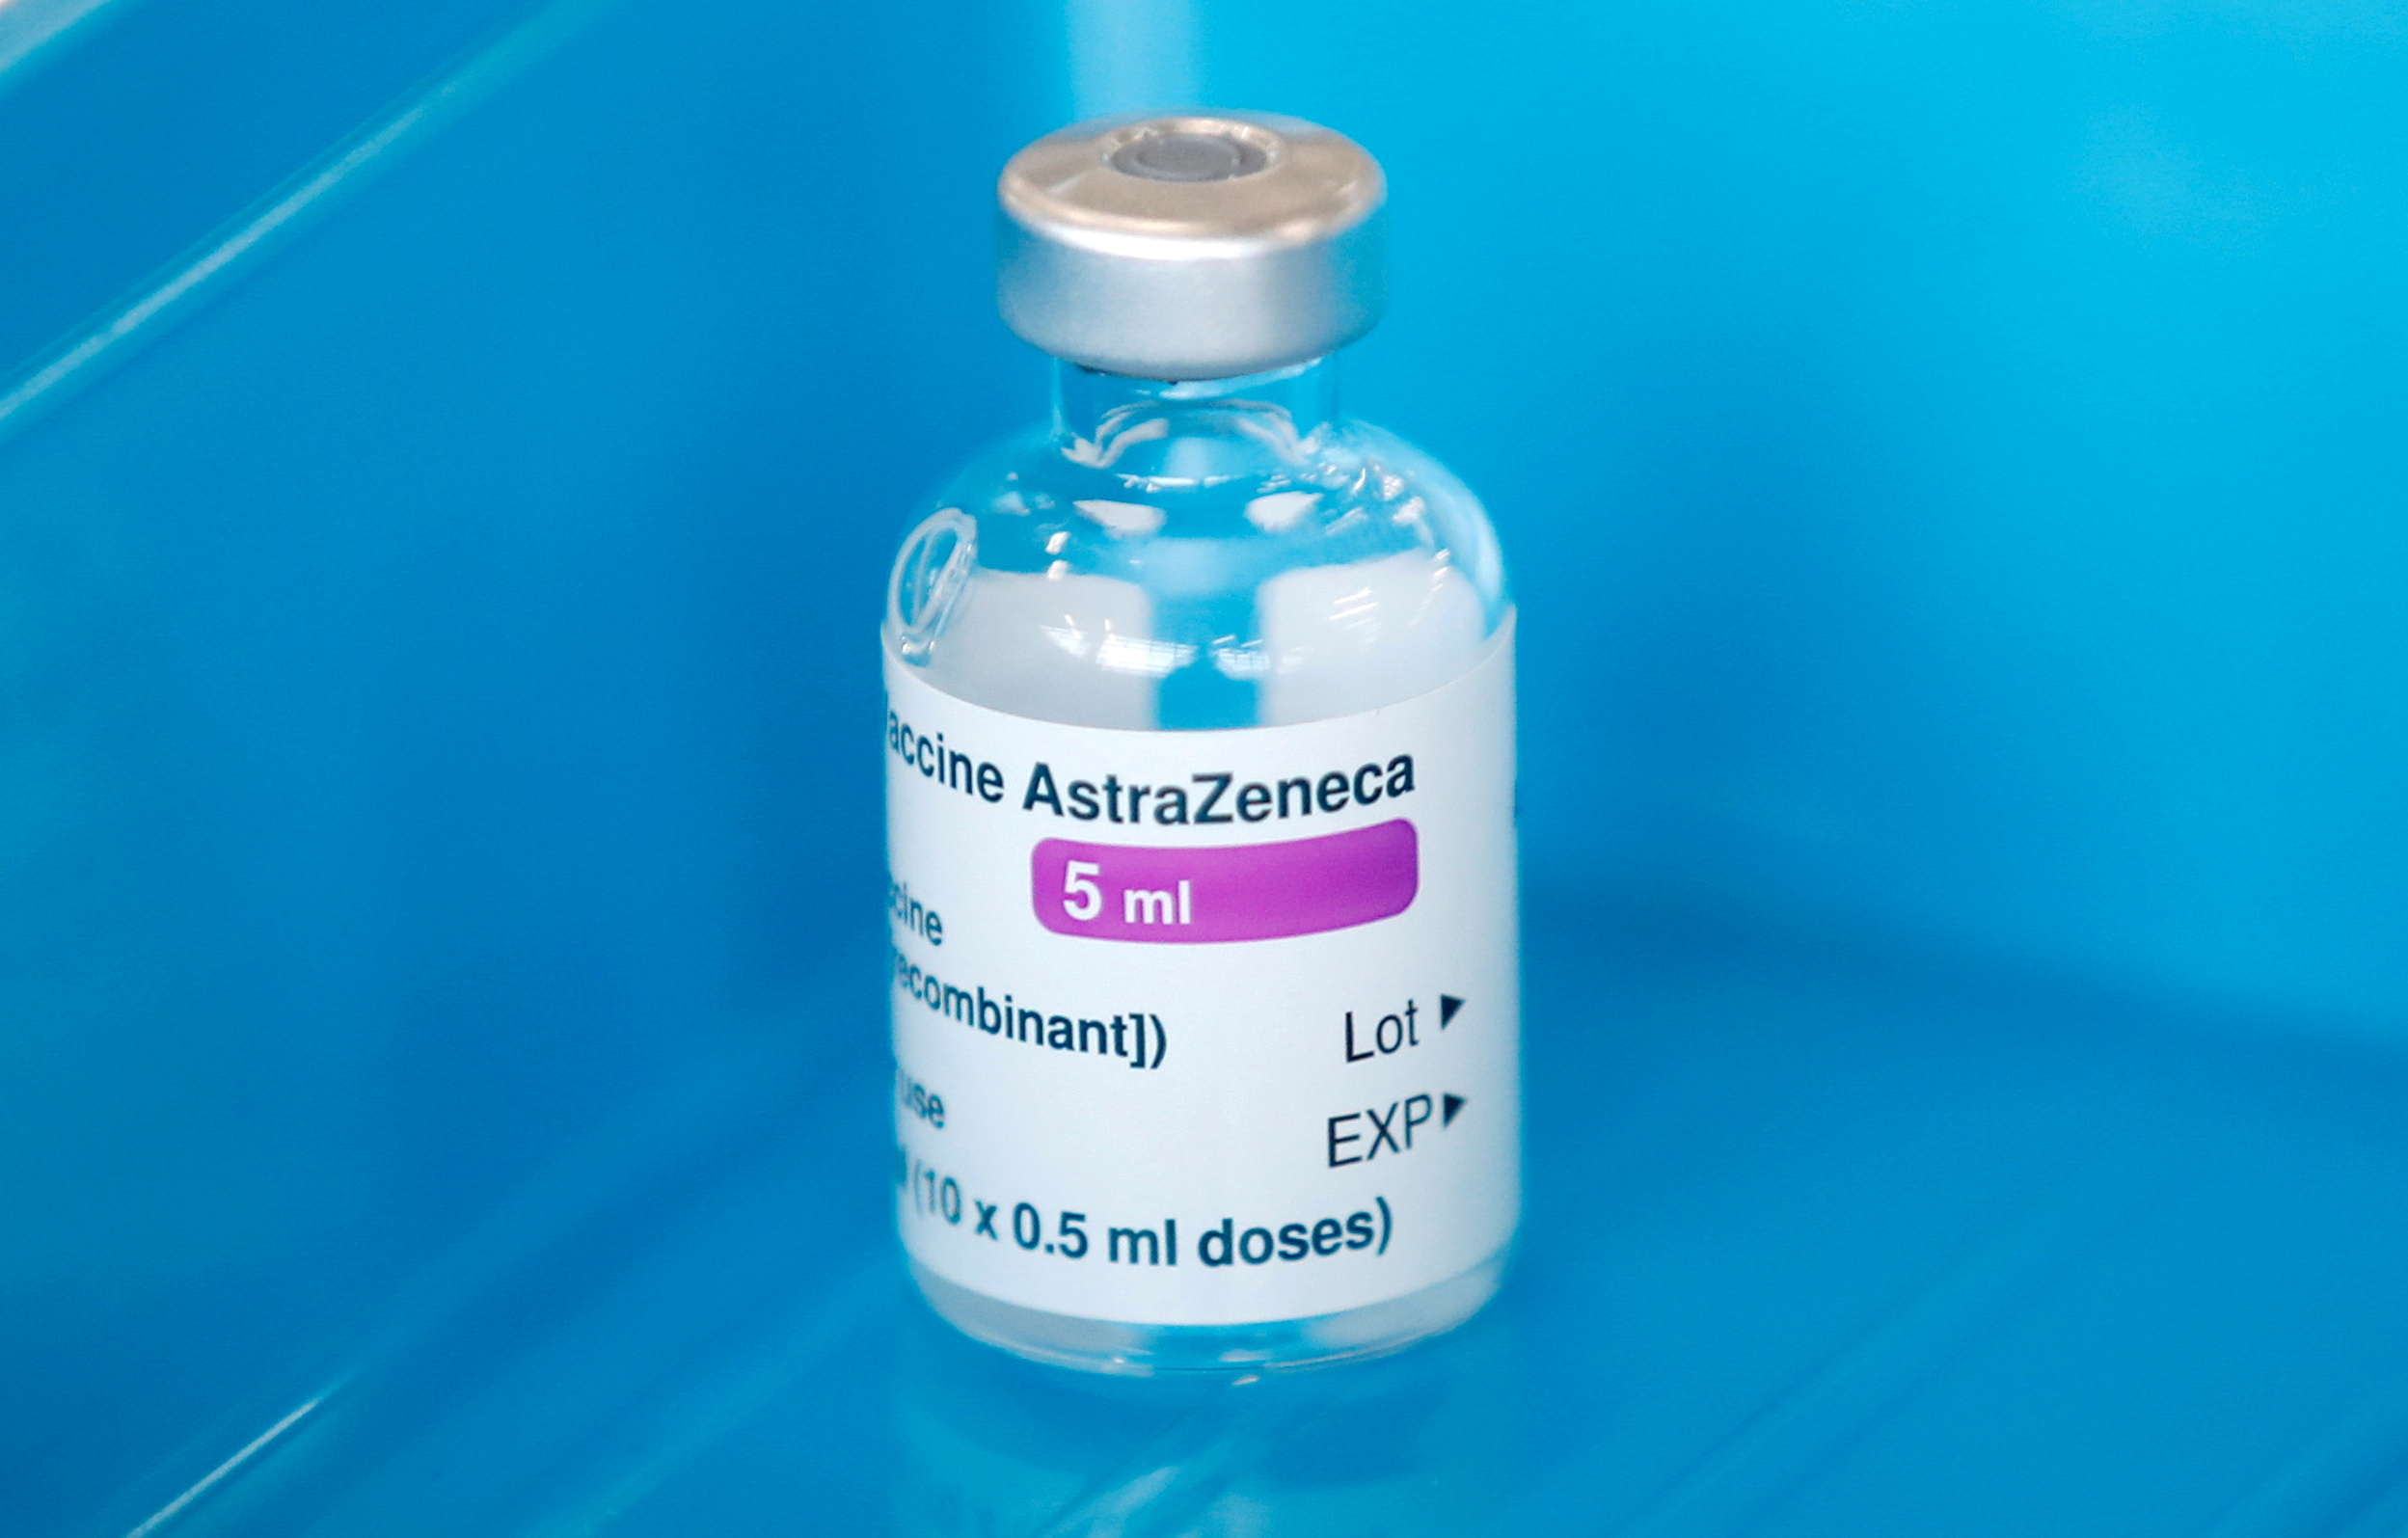 Ucrania denuncia presunto “ataque informativo” contra la vacuna de AstraZeneca